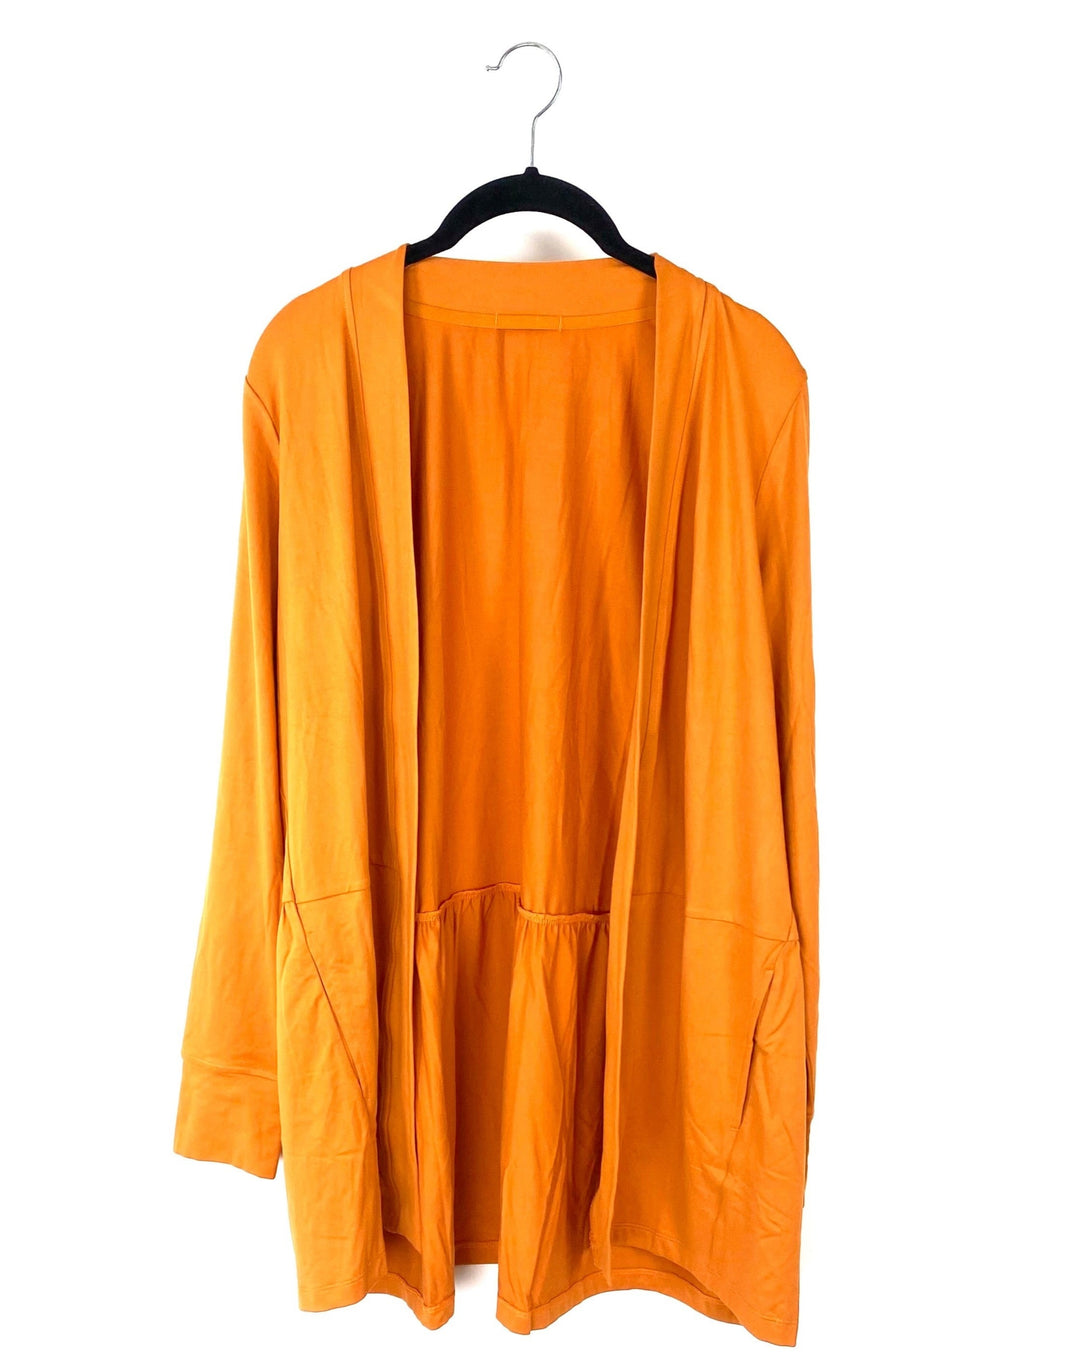 Orange Long Sleeve Cardigan -Size 6/8